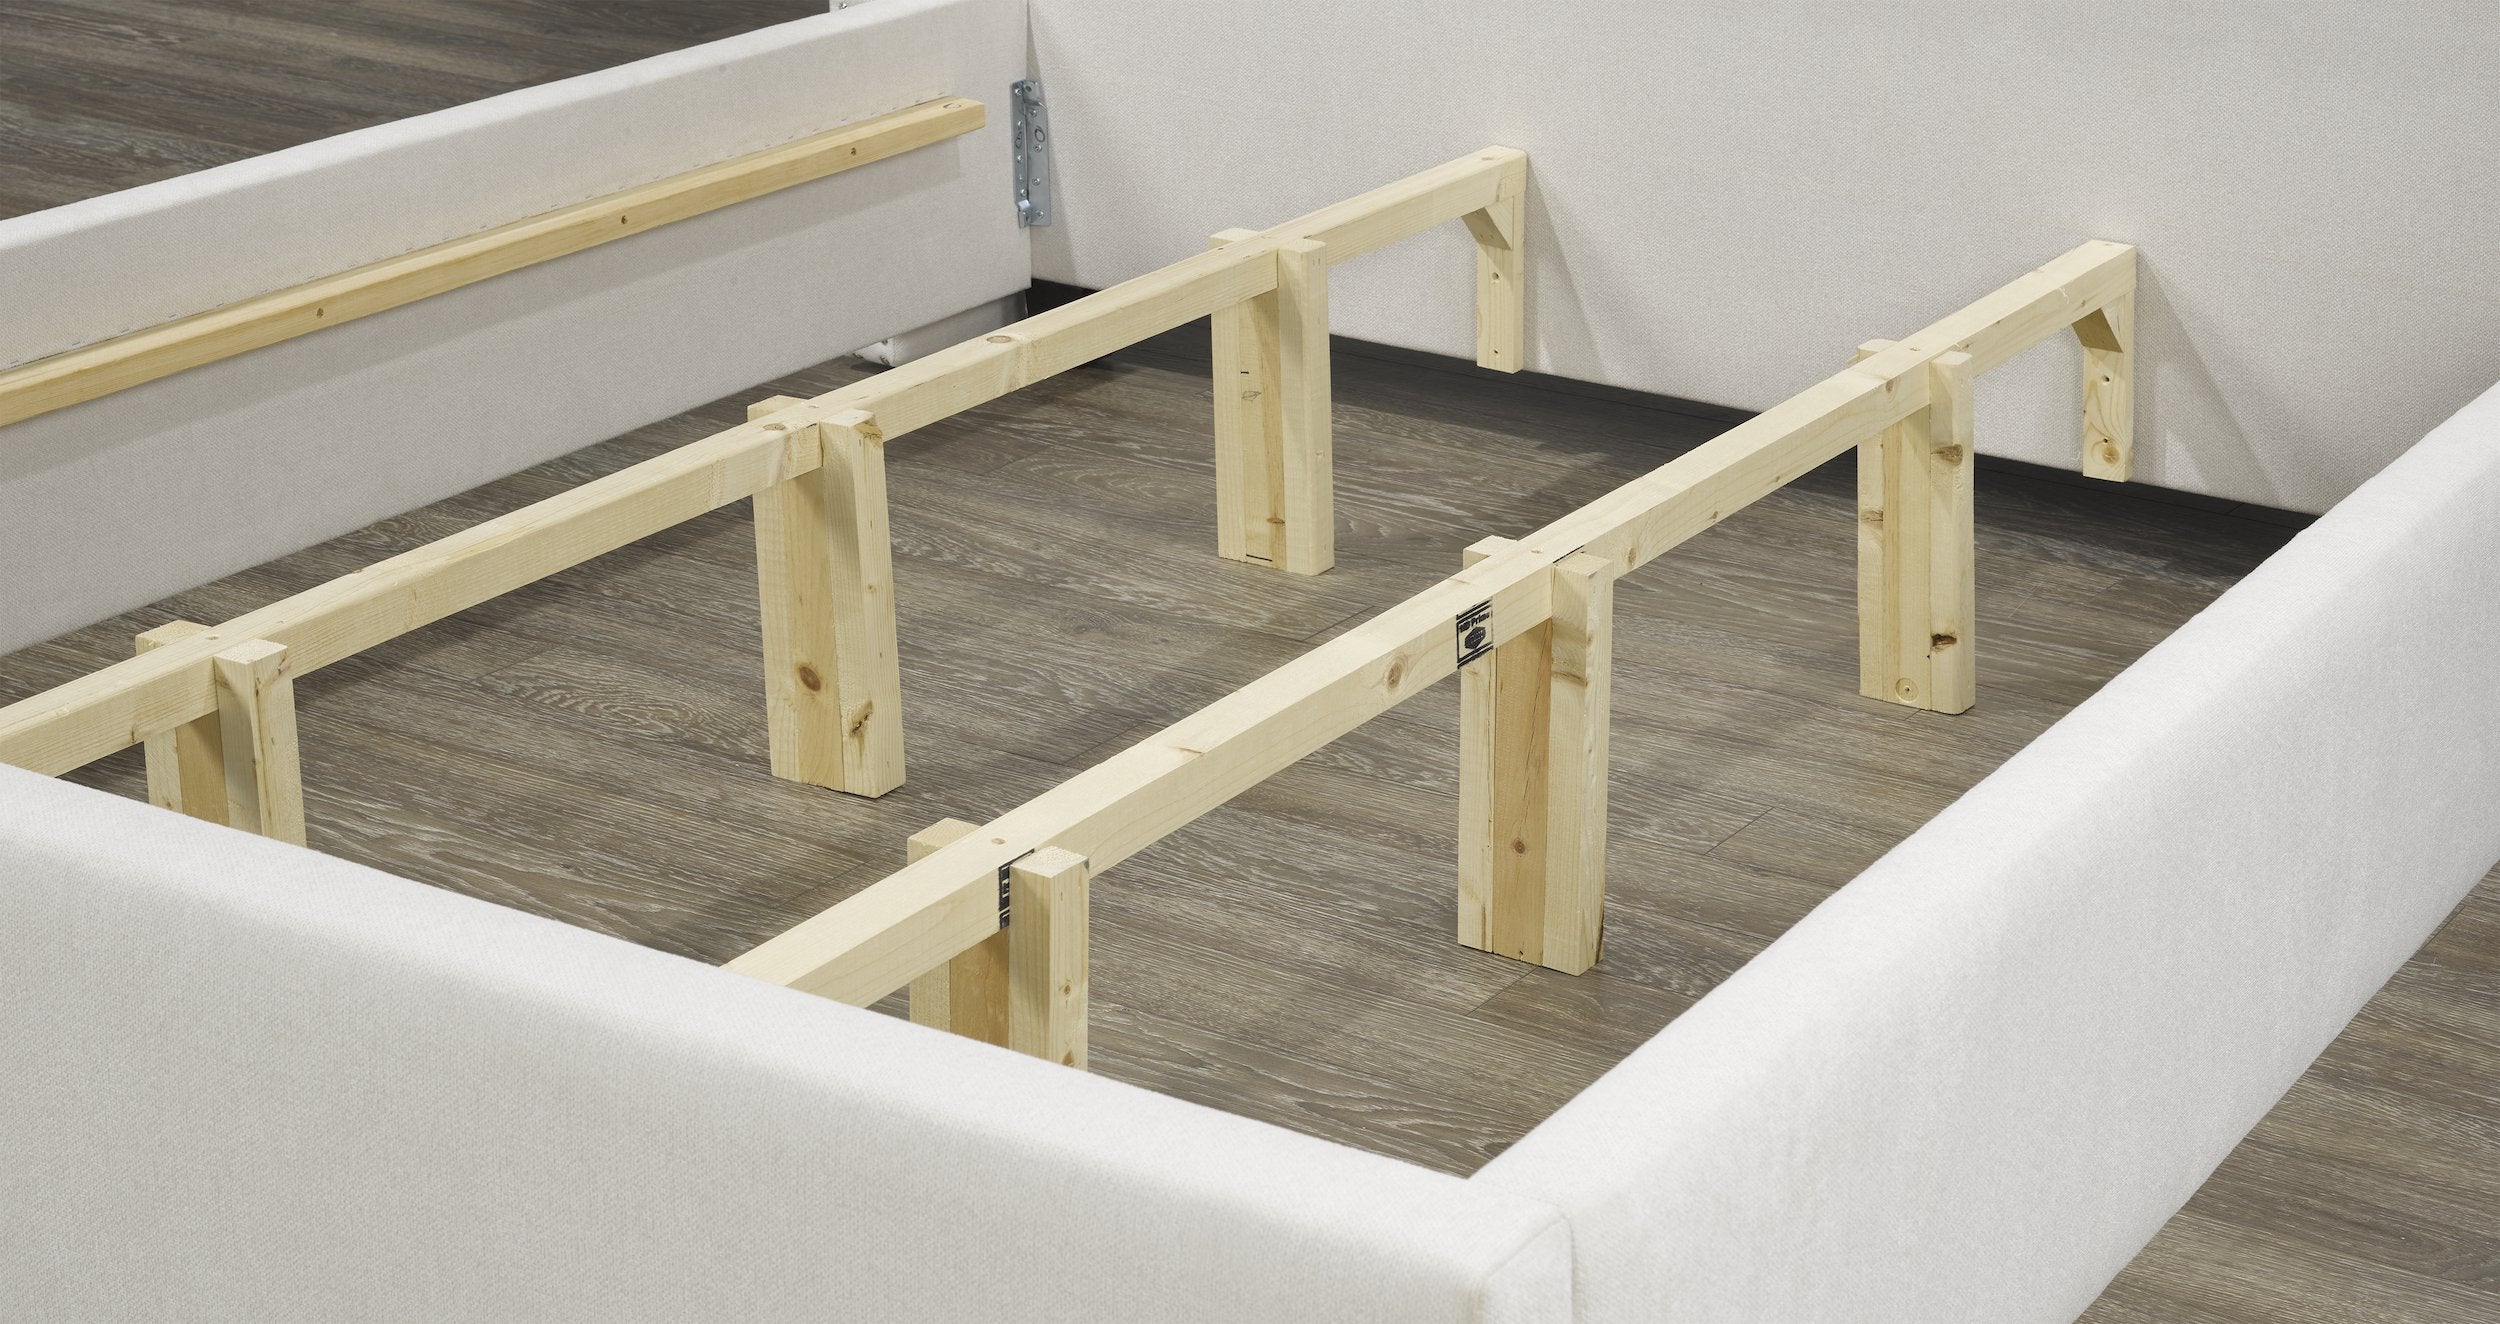 Tulita Platform Bed - Ivory Linen - Canadian Furniture